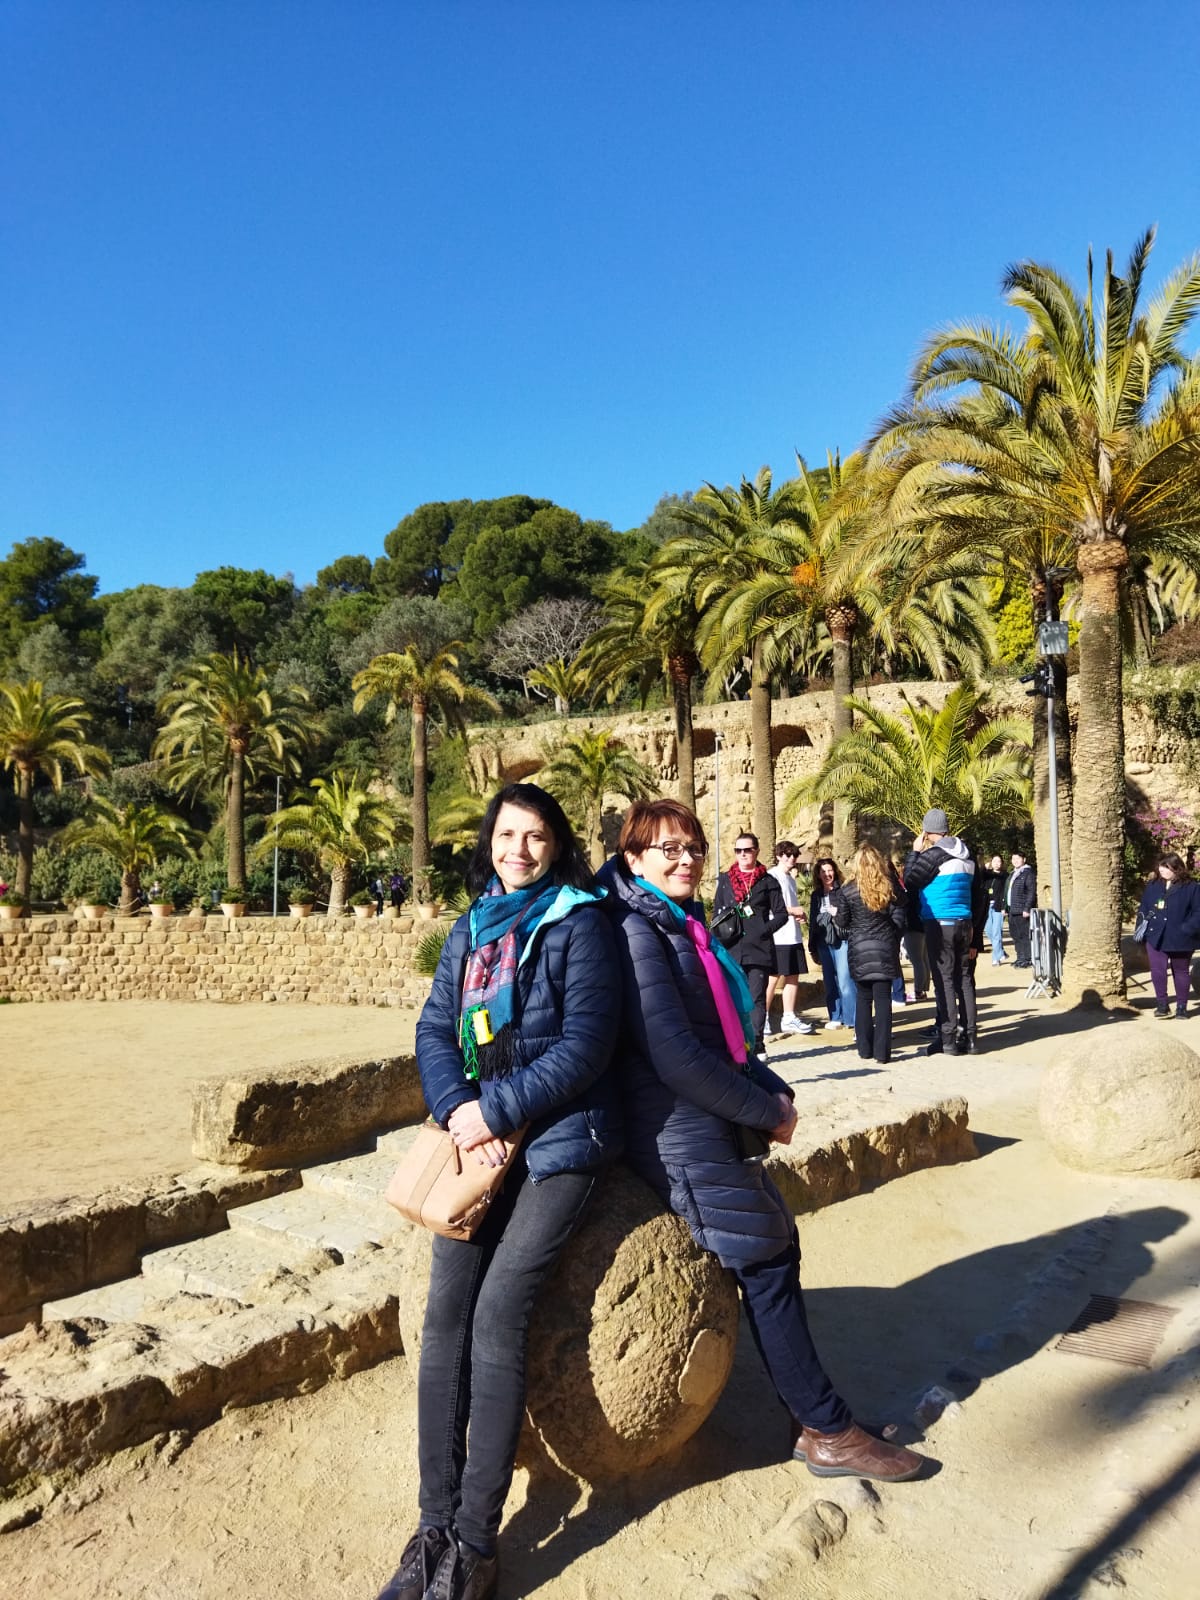 W Parku Güell , arcydziele architektonicznym autorstwa Gaudiego